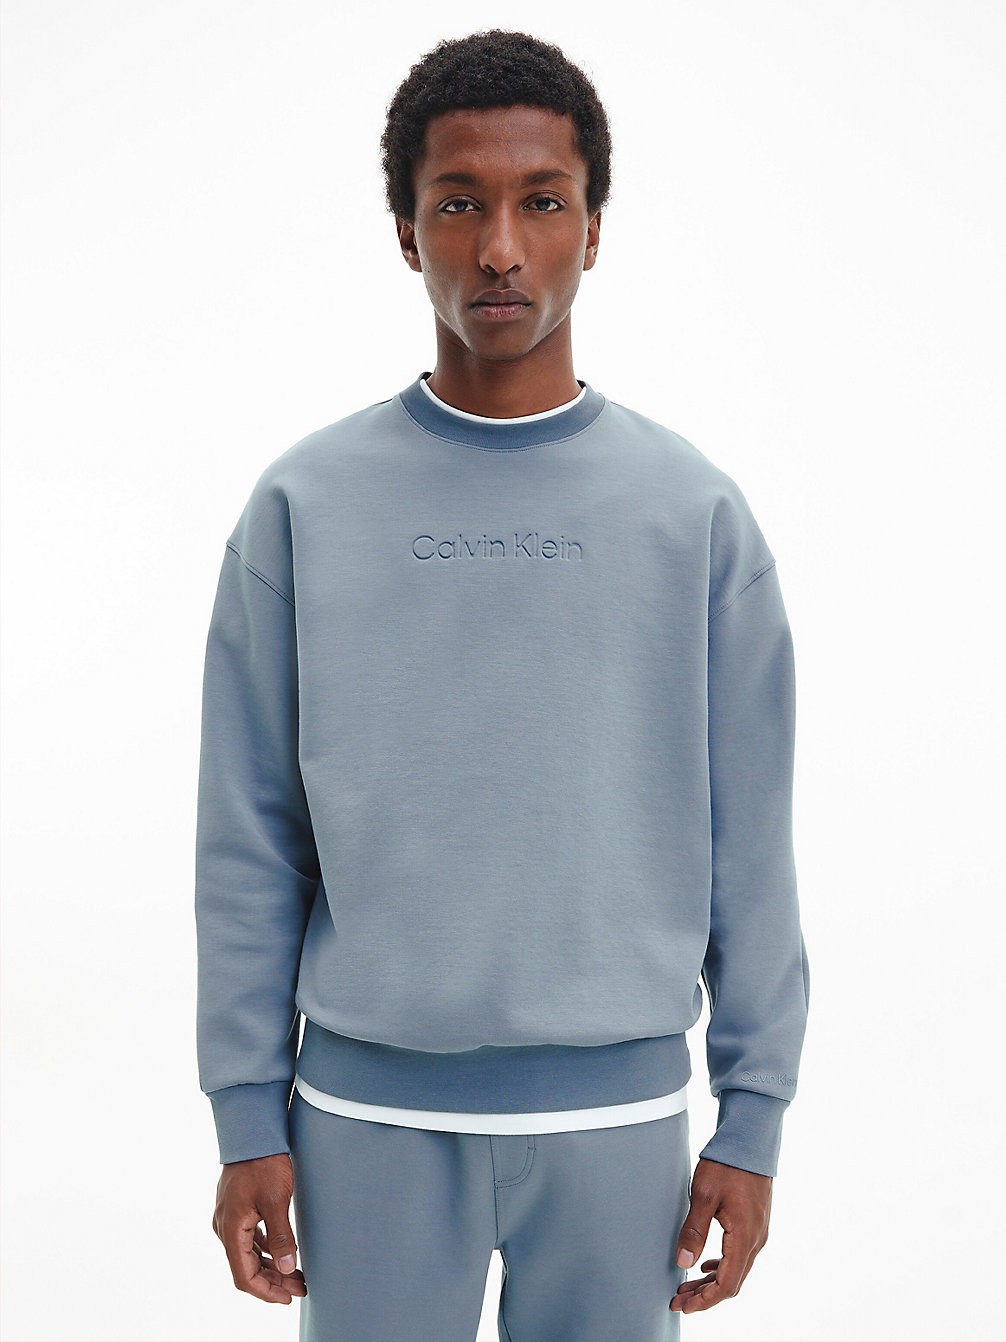 GREY TAR Lässiges Sweatshirt Aus Bio-Baumwolle undefined Herren Calvin Klein